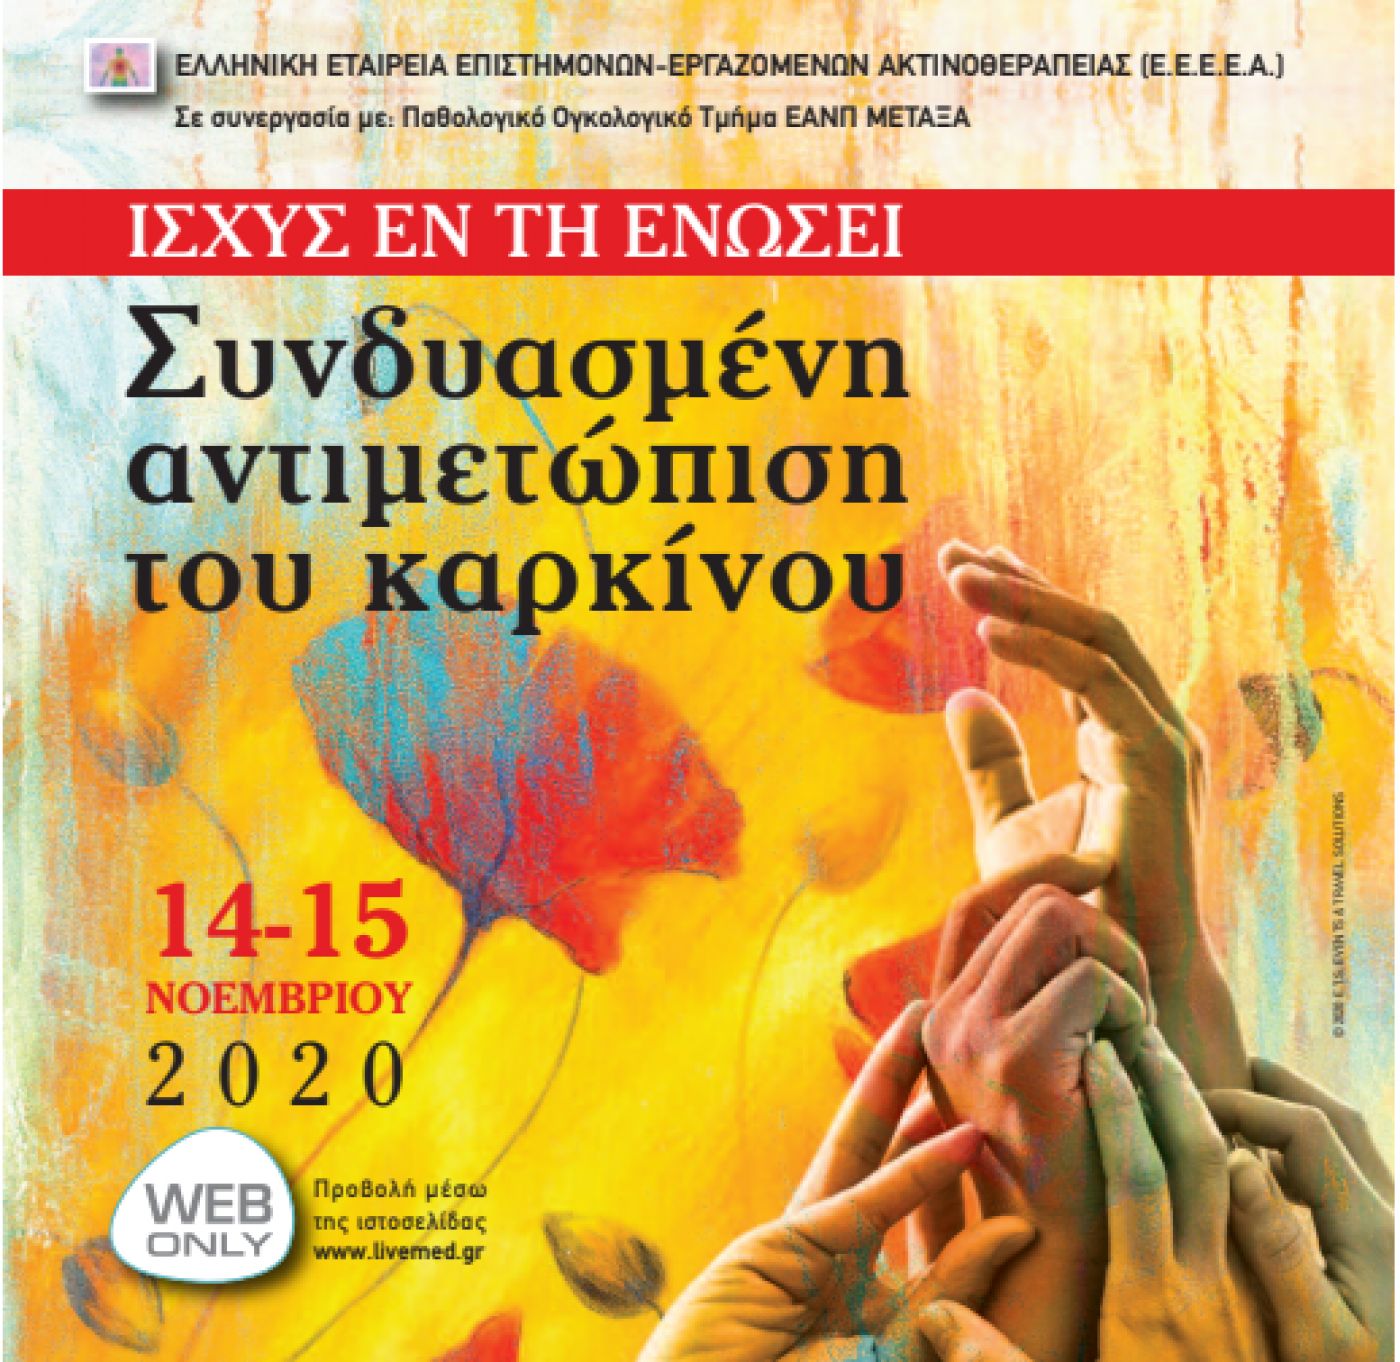 Συνδυασμένη αντιμετώπιση του καρκίνου-Ελληνική Εταιρεία Επιστημόνων Εργαζομένων Ακτινοθεραπείας (Ε.Ε.Ε.Ε.Α.) (14-15 Νοεμβρίου 2020)